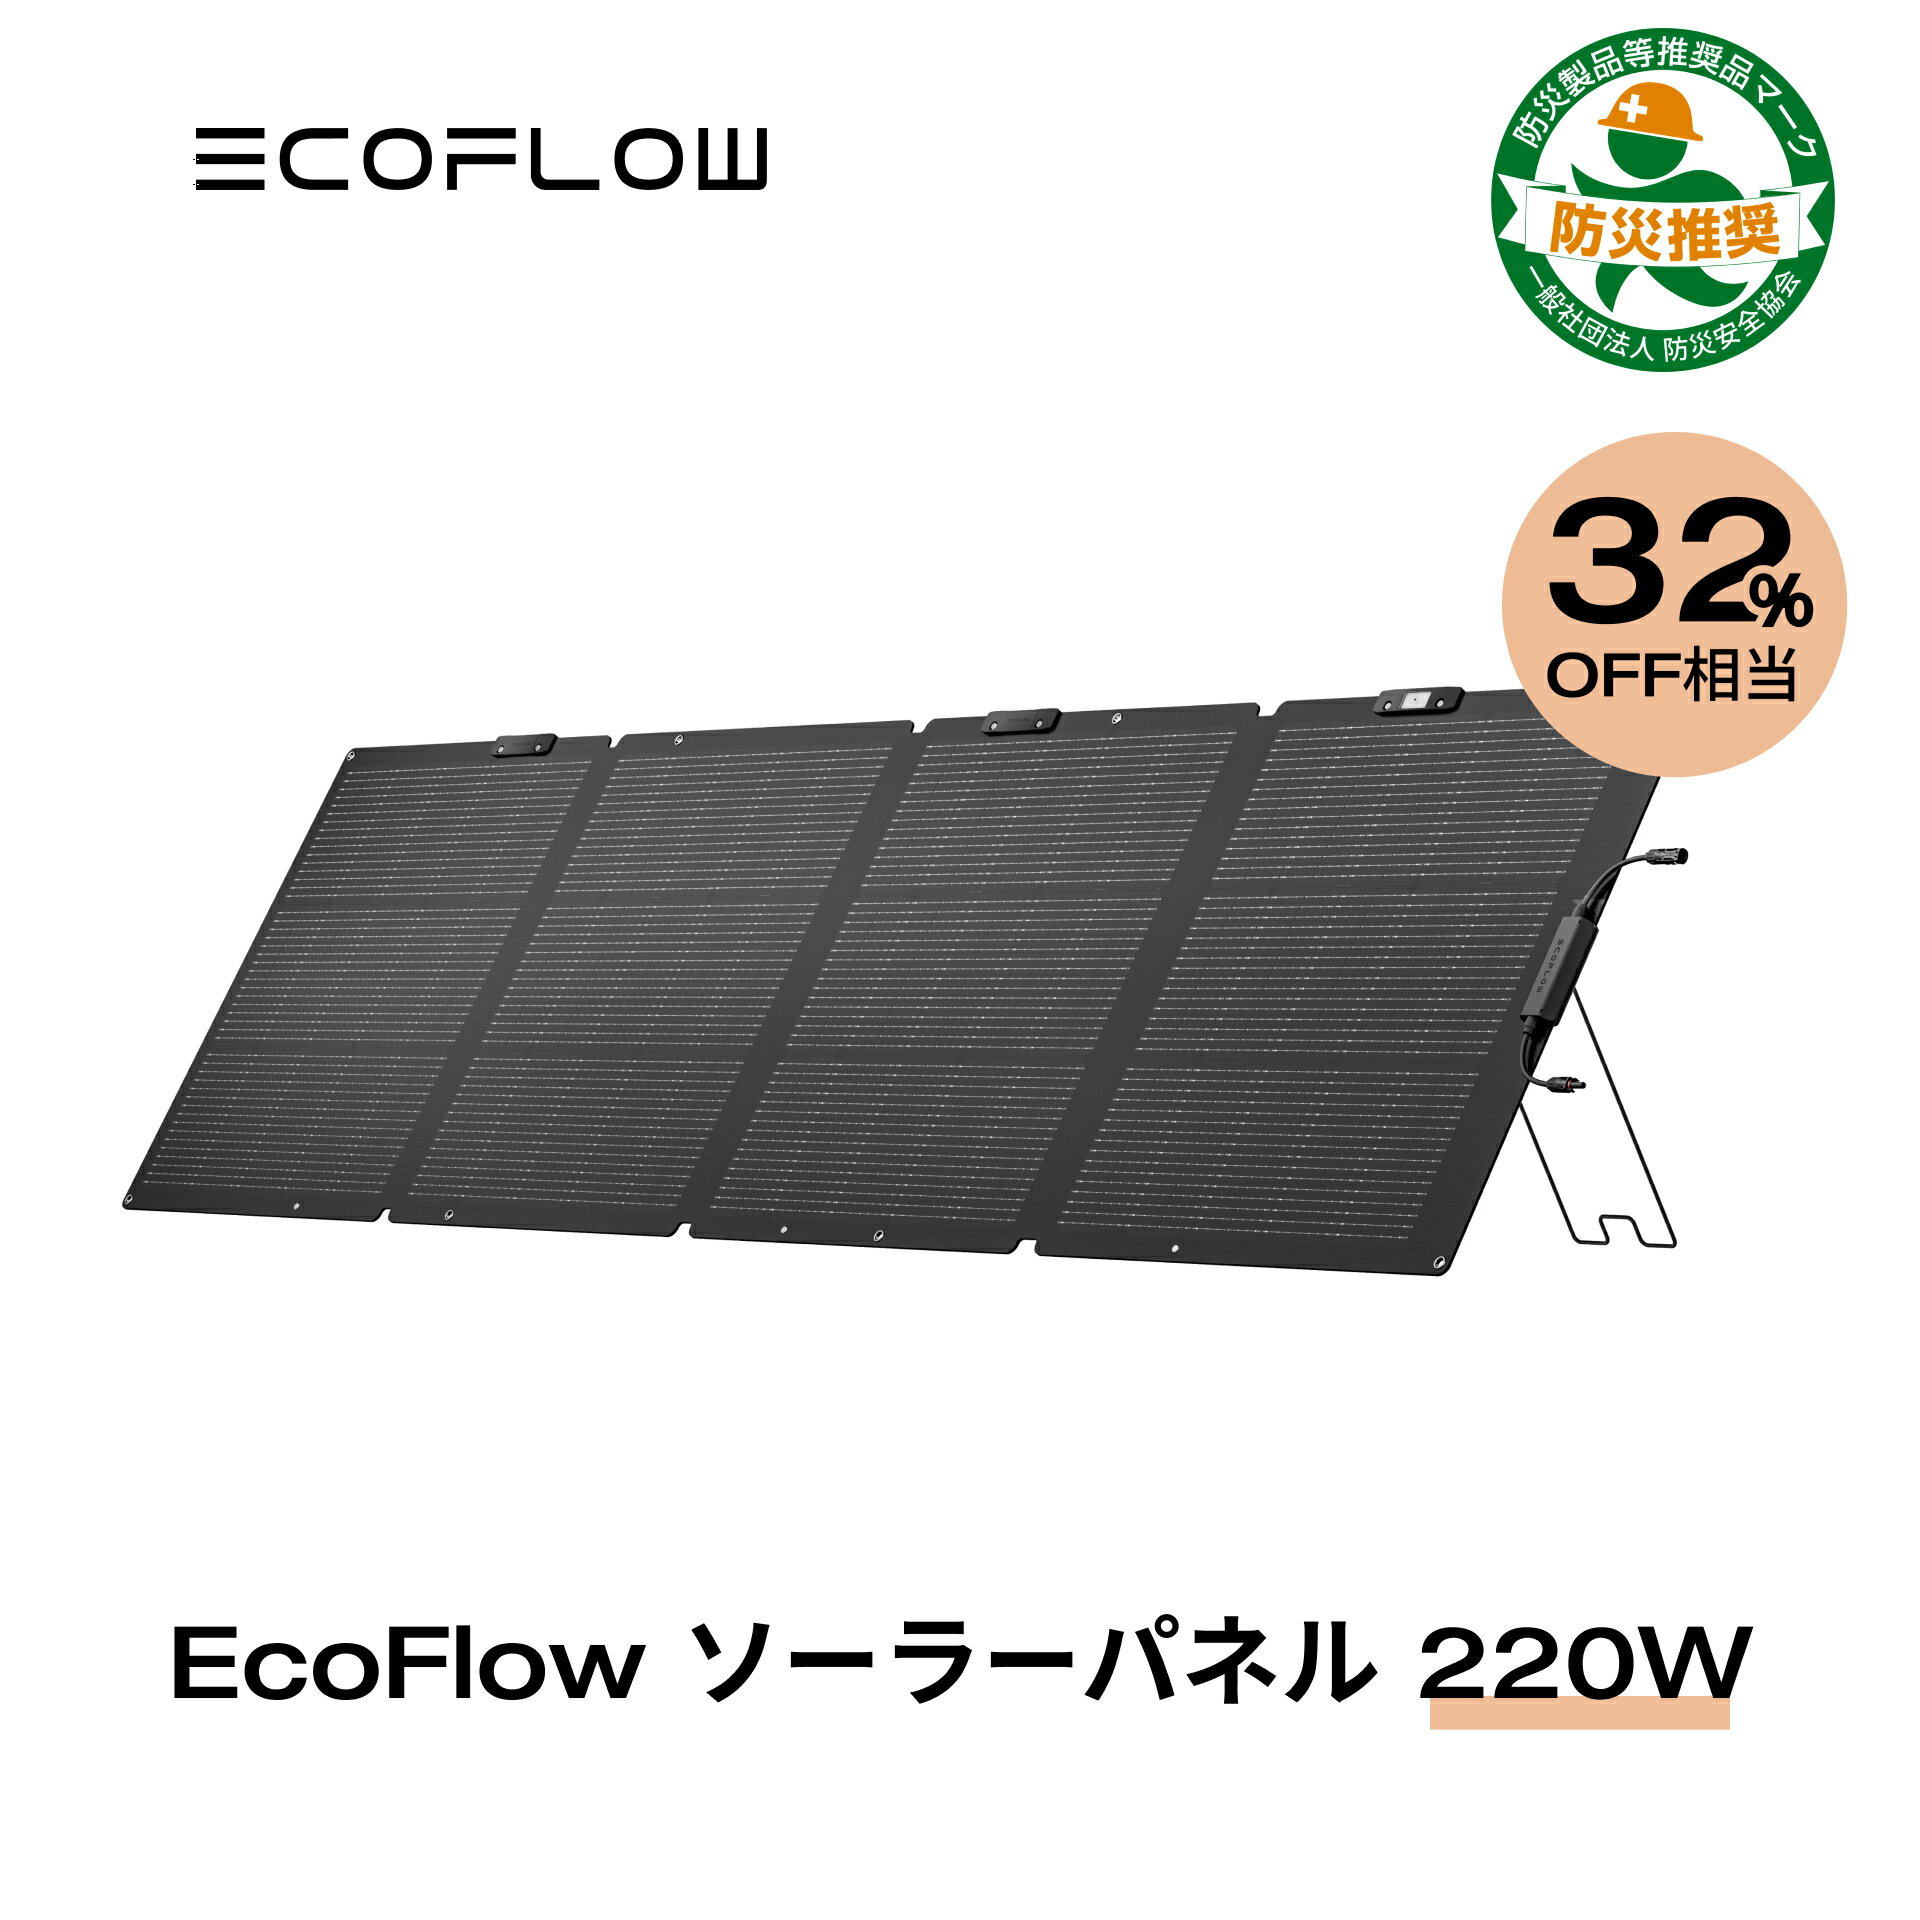 【クーポン併用で46,975円!5/15から】EcoFlow ソーラーパネル 220W 片面 ソーラー充電器 太陽光発電 太陽光パネル ソ…